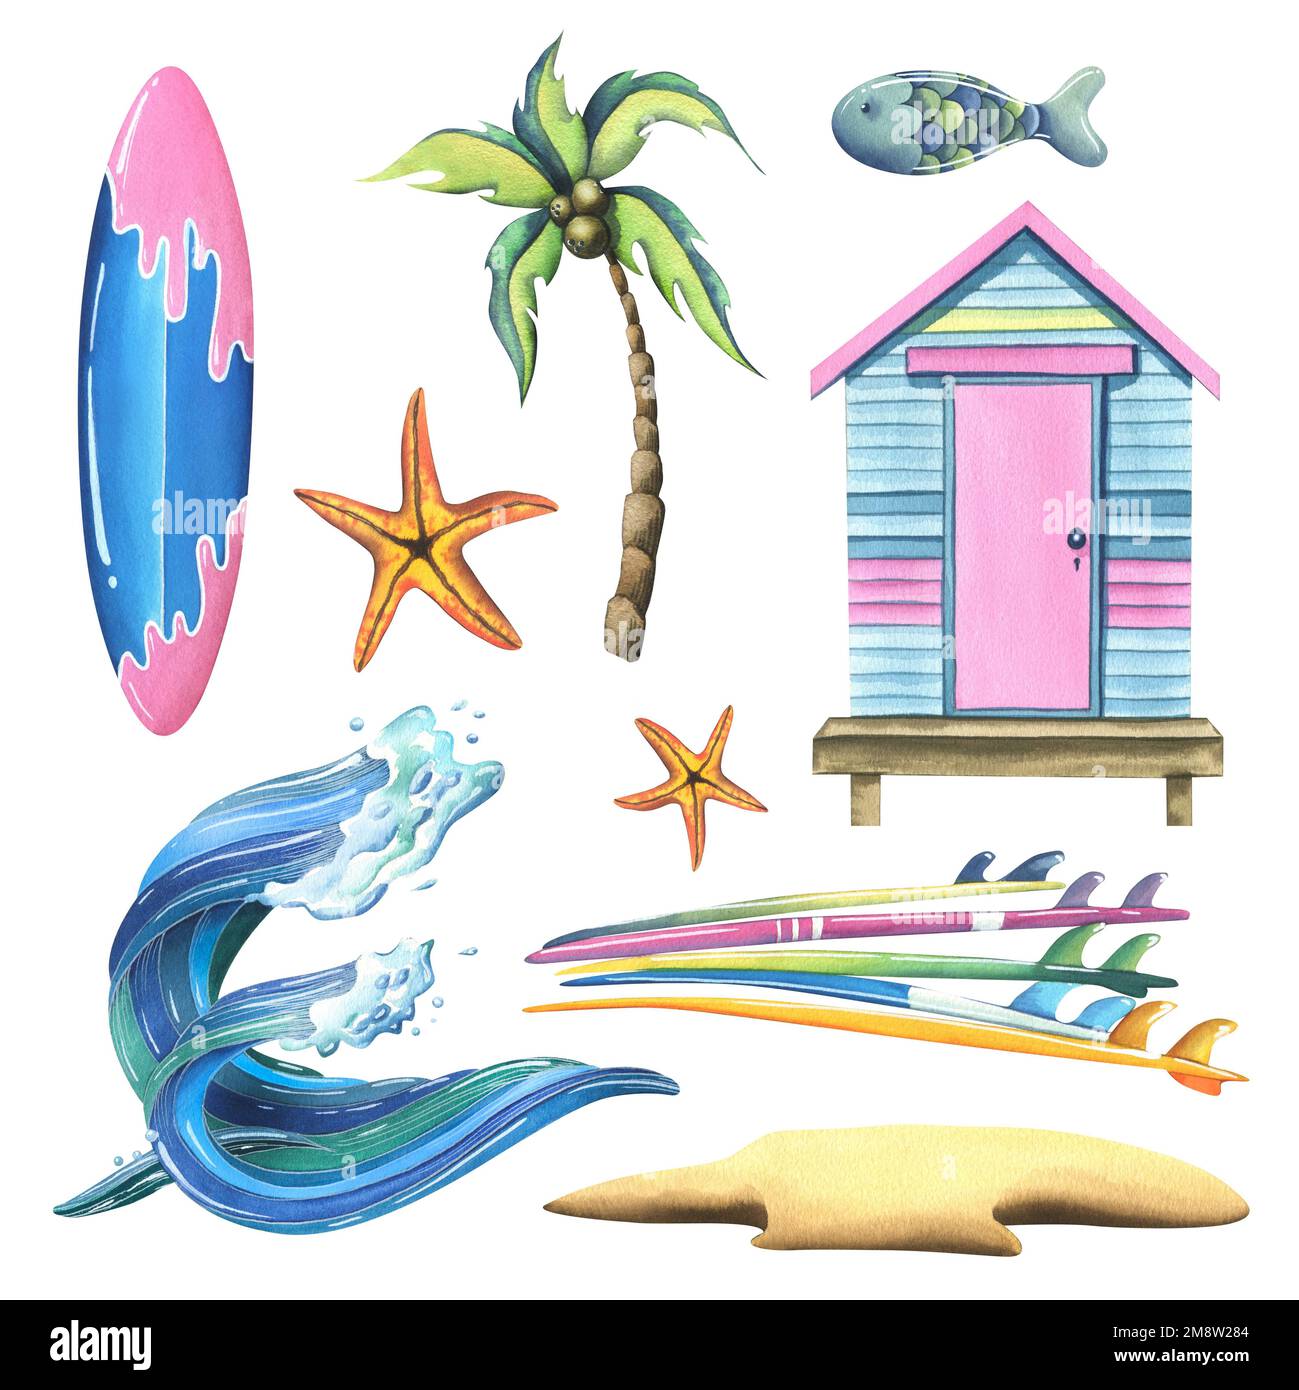 Las tablas de surf son multicolores, grises, rosadas, azules, rayadas.  ilustración de acuarela. objetos aislados sobre un fondo blanco de la  colección surf. para composiciones de decoración y diseño.